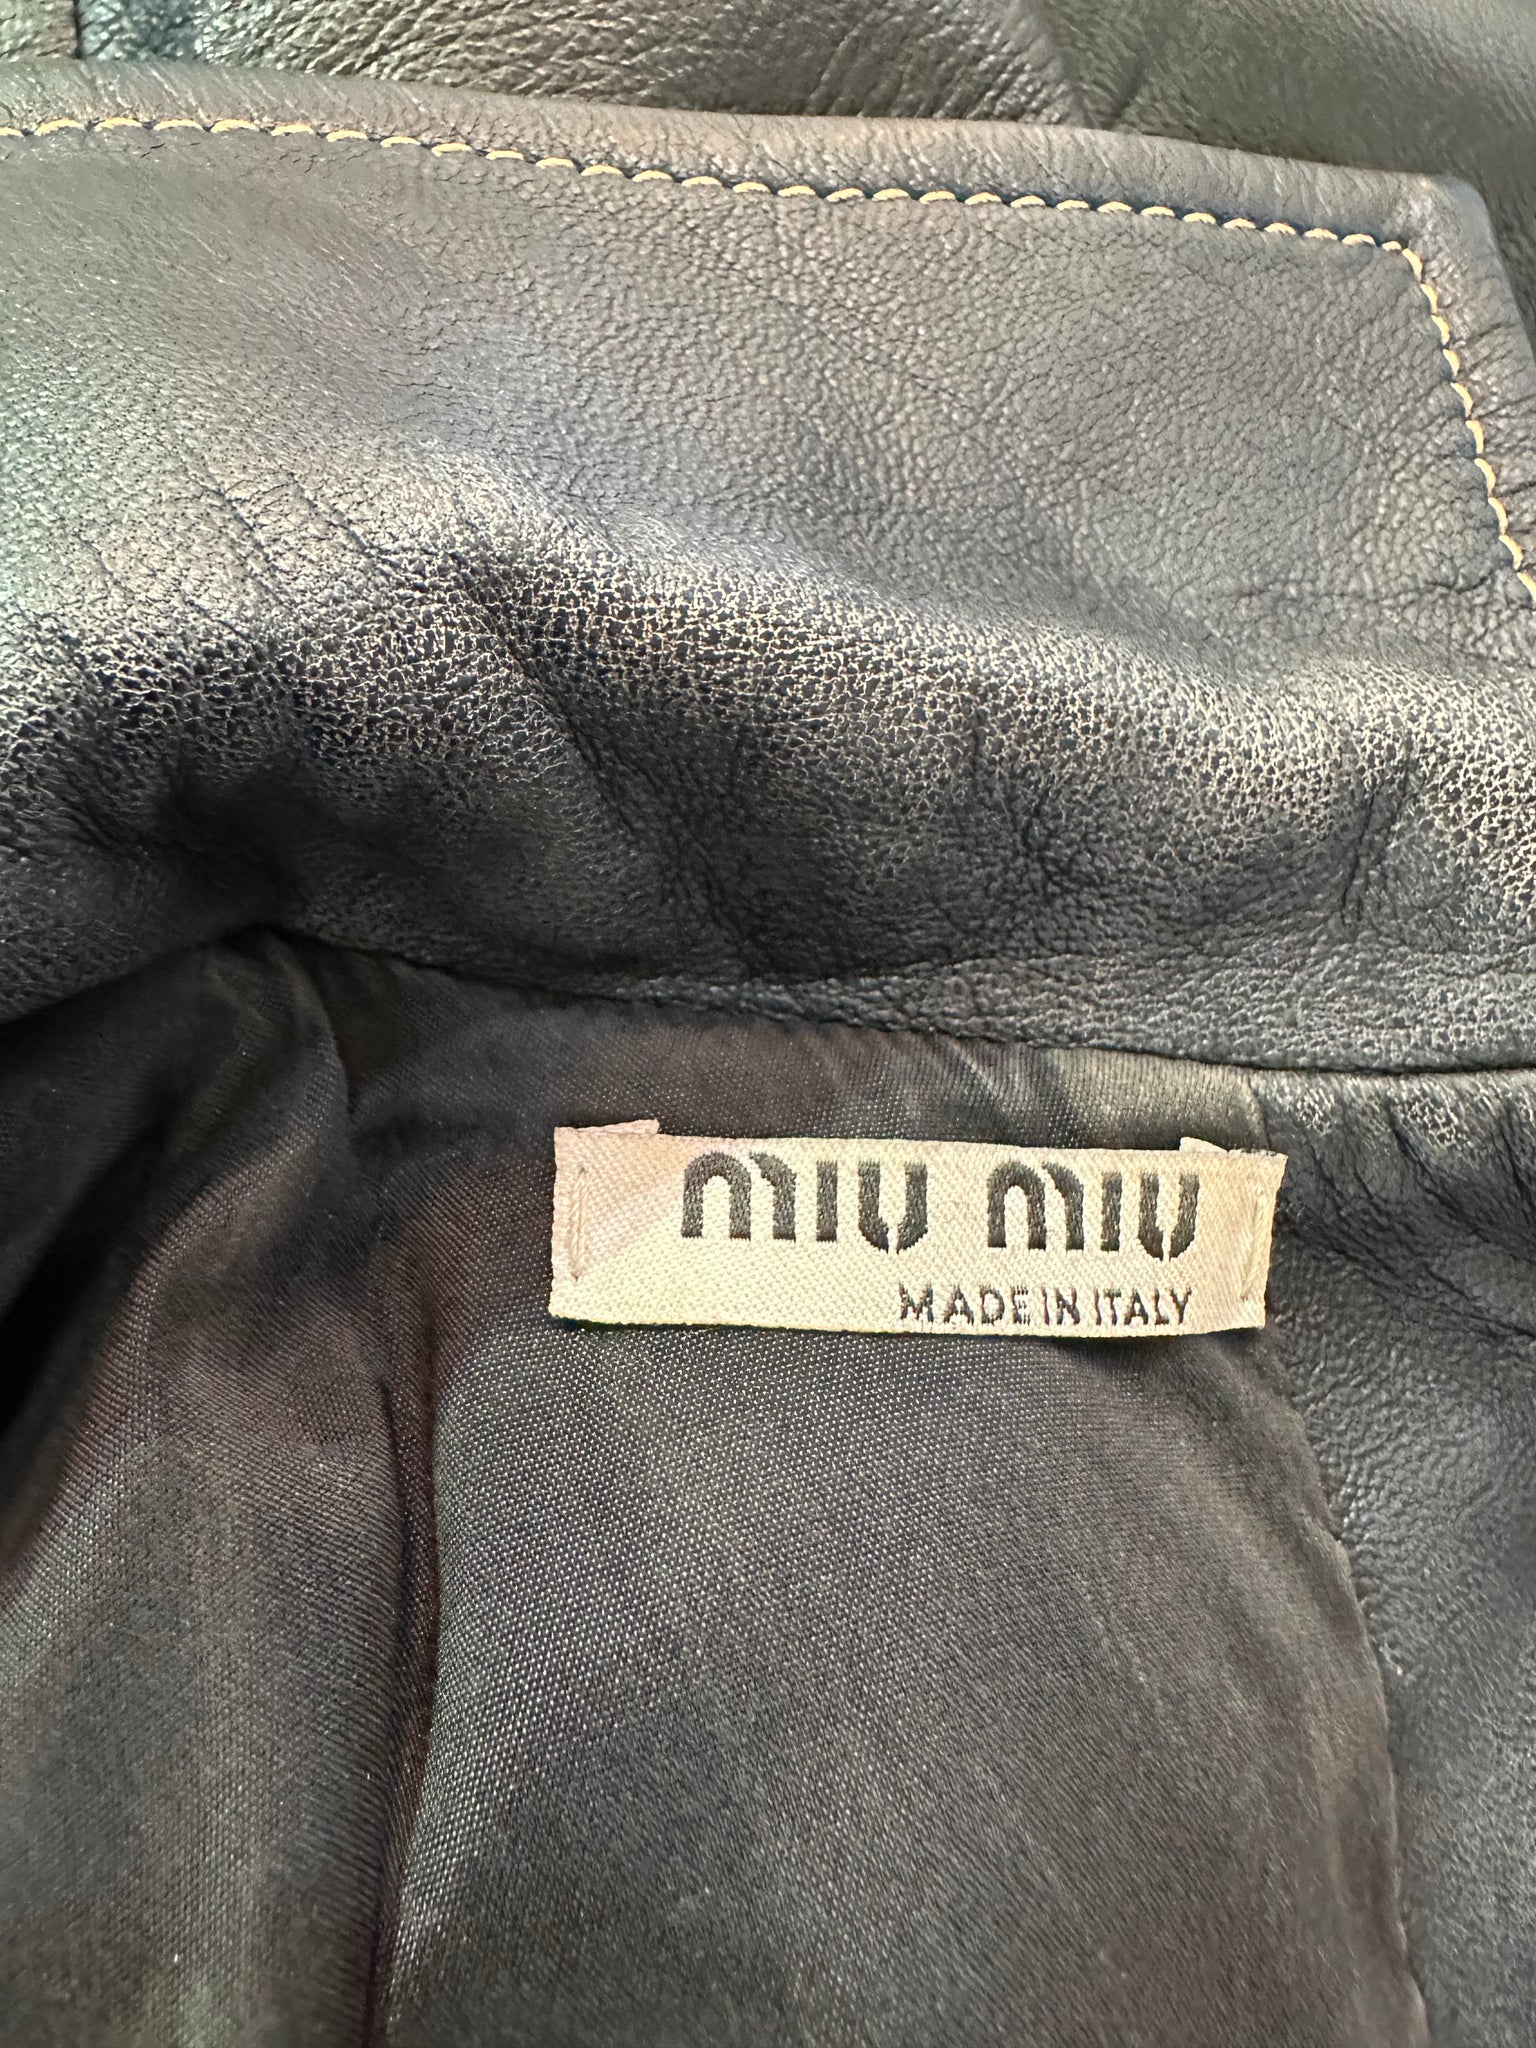  Miu Miu Leather Mini Dress/Tunic with Bow  Miu Miu Leather Mini Dress/Tunic with Bow  LABEL 6 of 6